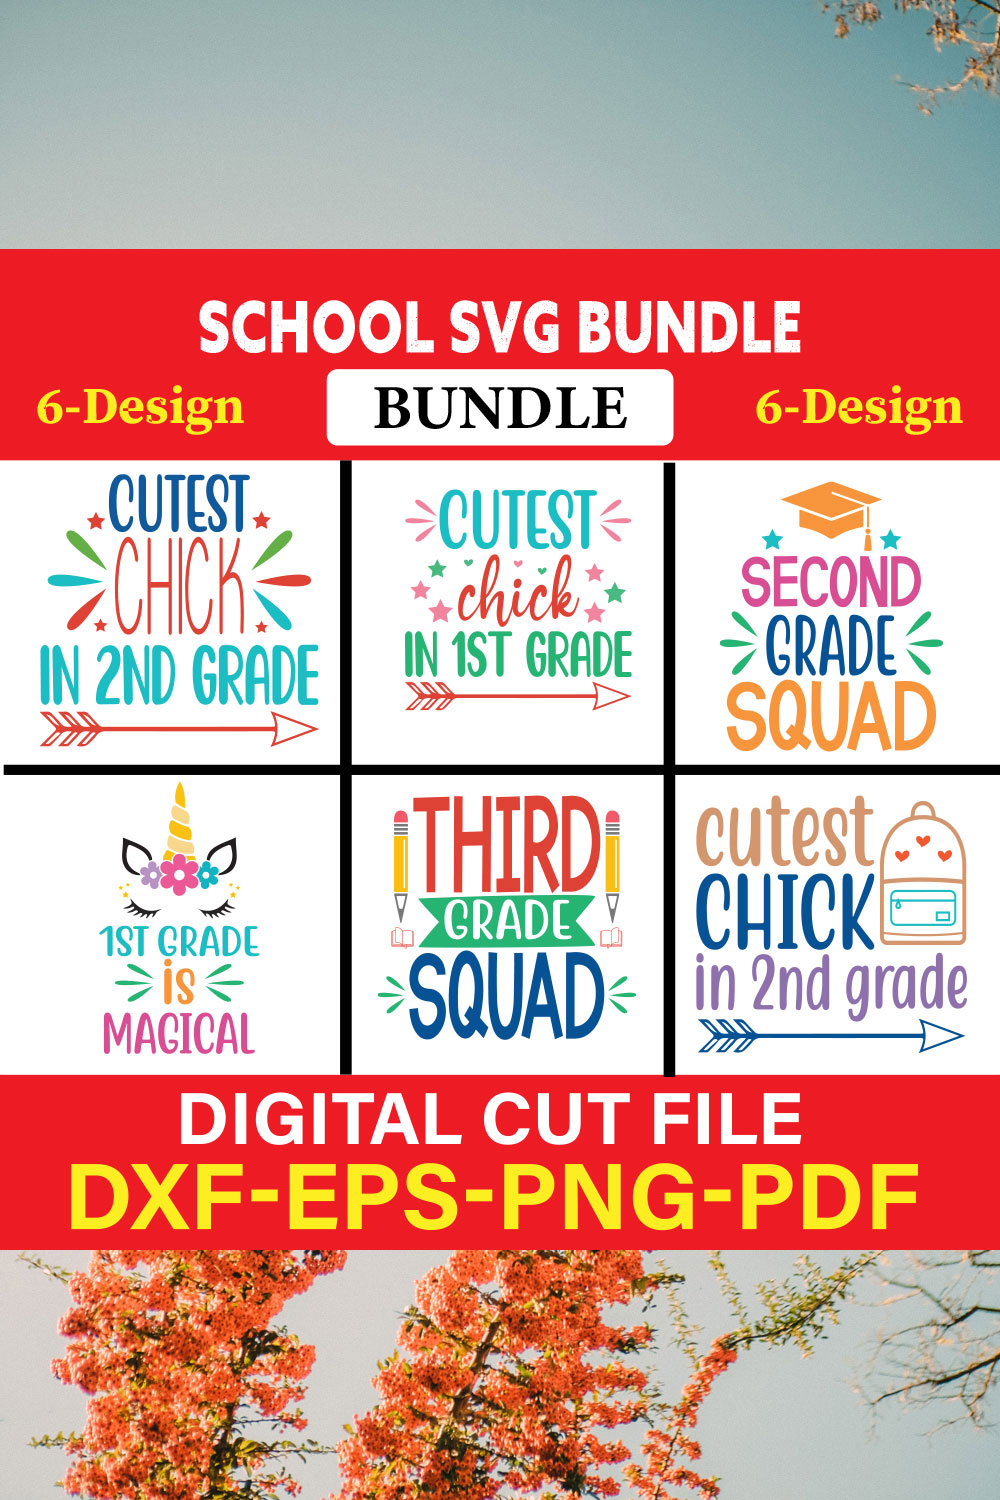 School svg bundle T-shirt Design Bundle Vol-4 pinterest preview image.